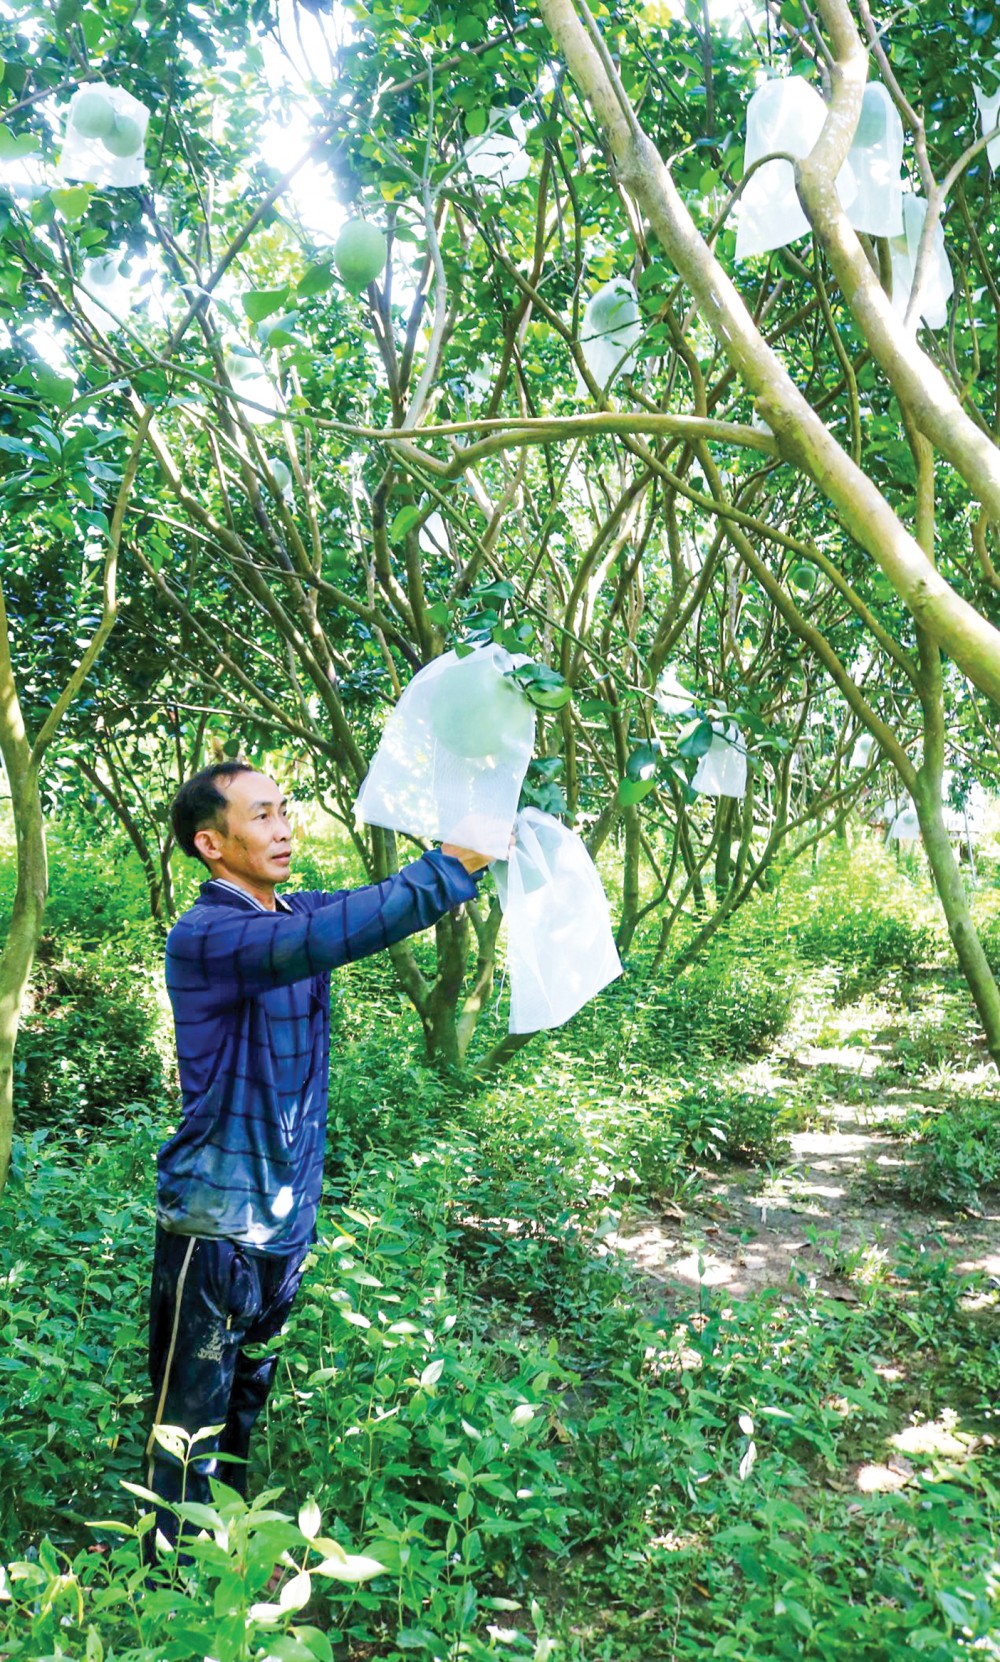 Nông dân tại huyện Thới Lai, TP Cần Thơ bảo vệ trái cây bằng biện pháp bao trái, giúp tạo sản phẩm an toàn, thân thiện với môi trường.